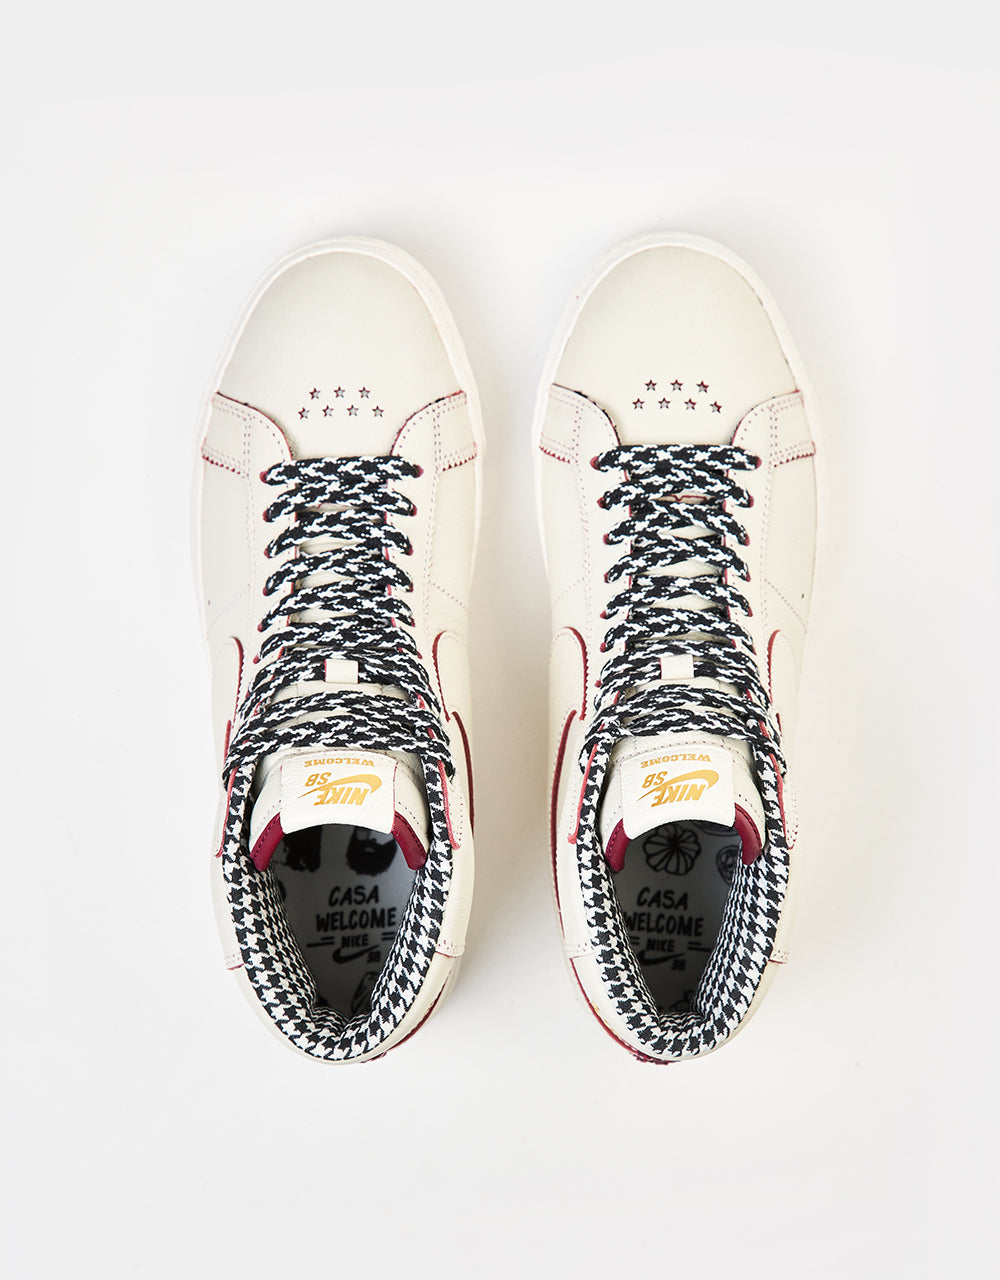 Nike SB 'Welcome Madrid' Zoom Blazer Mid QS Skate Shoes - Sail/Dark ...